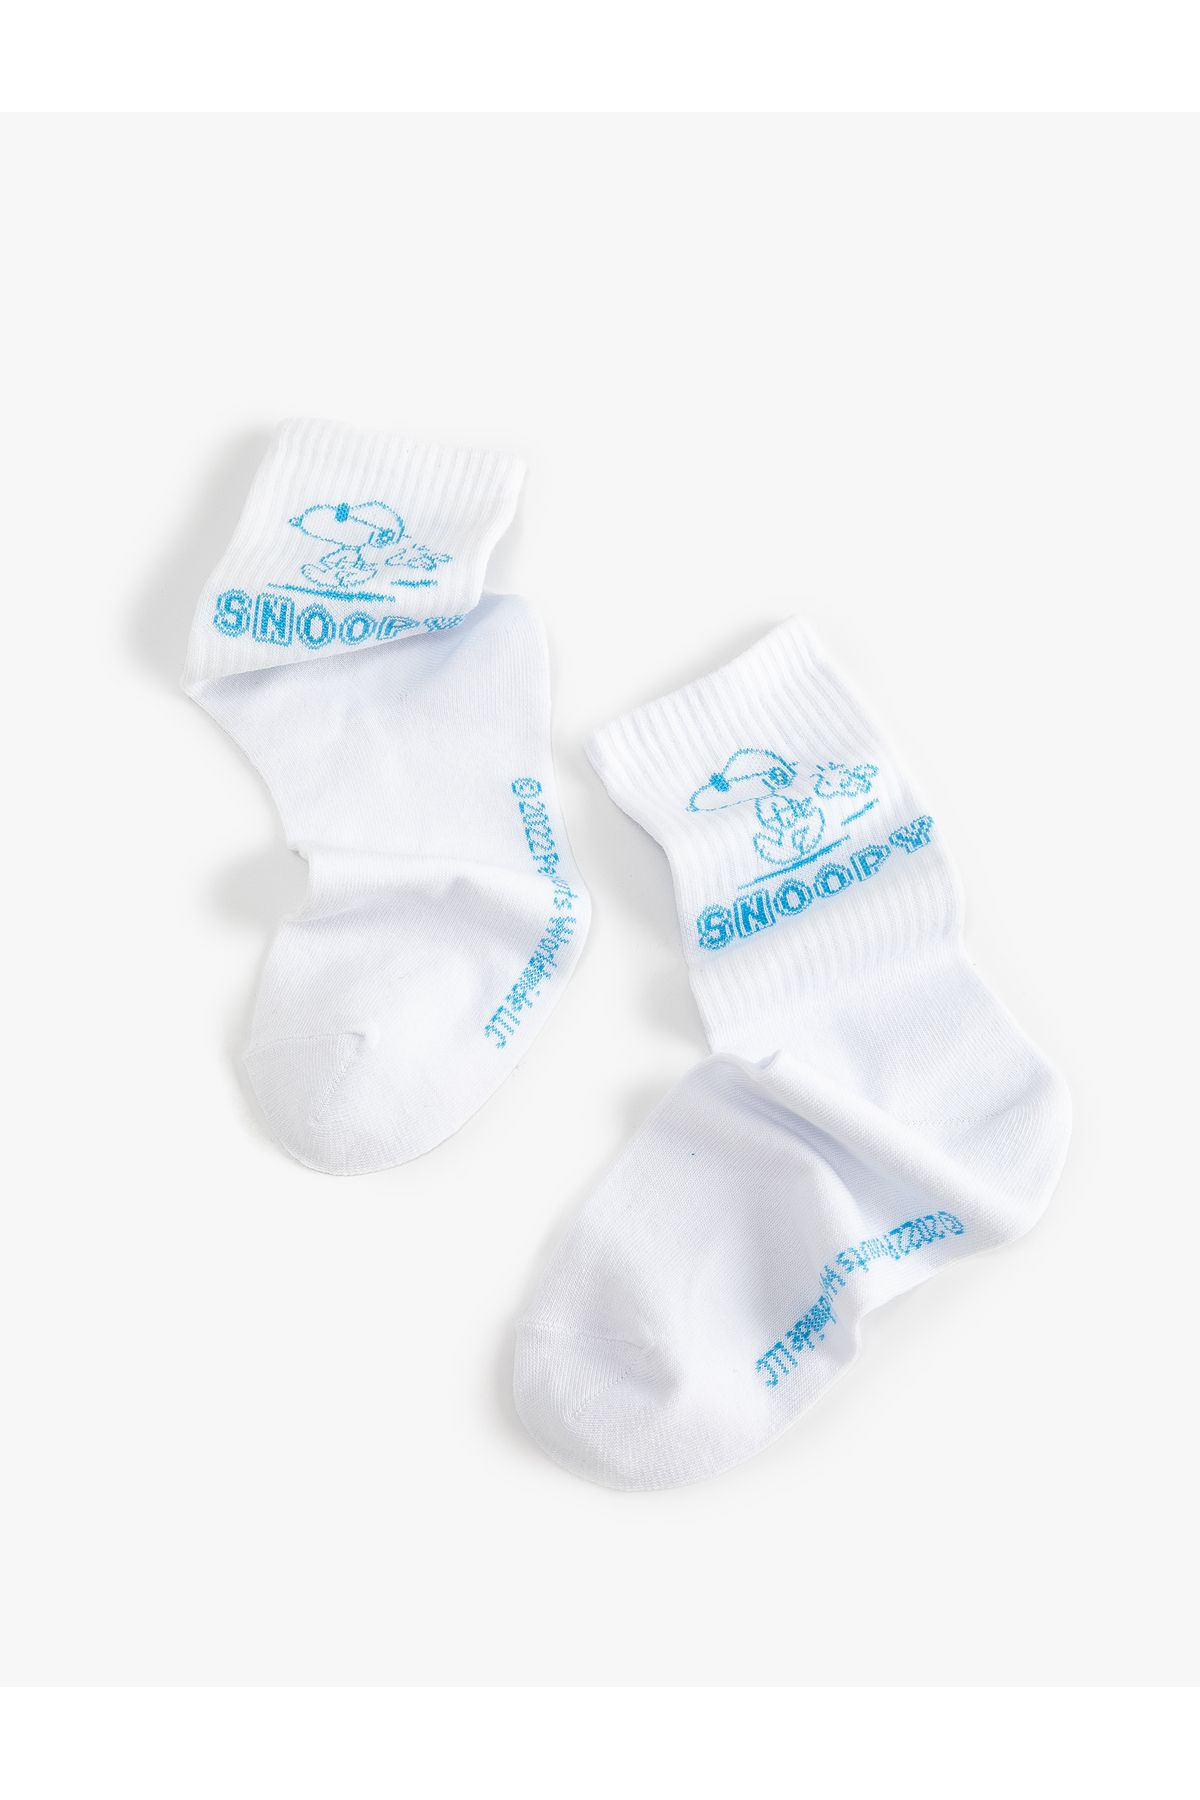 Koton Snoopy Soket Çorap Lisanslı Işlemeli